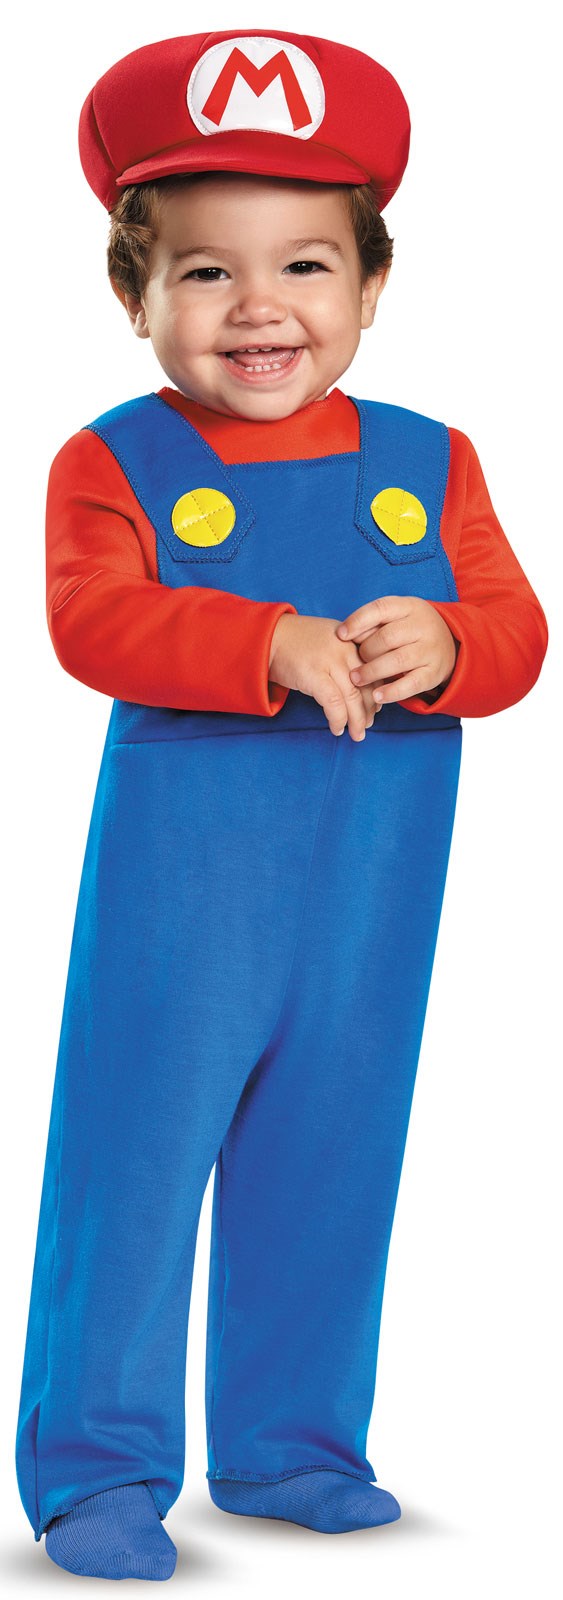 Super Mario Bros: Toddler Mario Costume